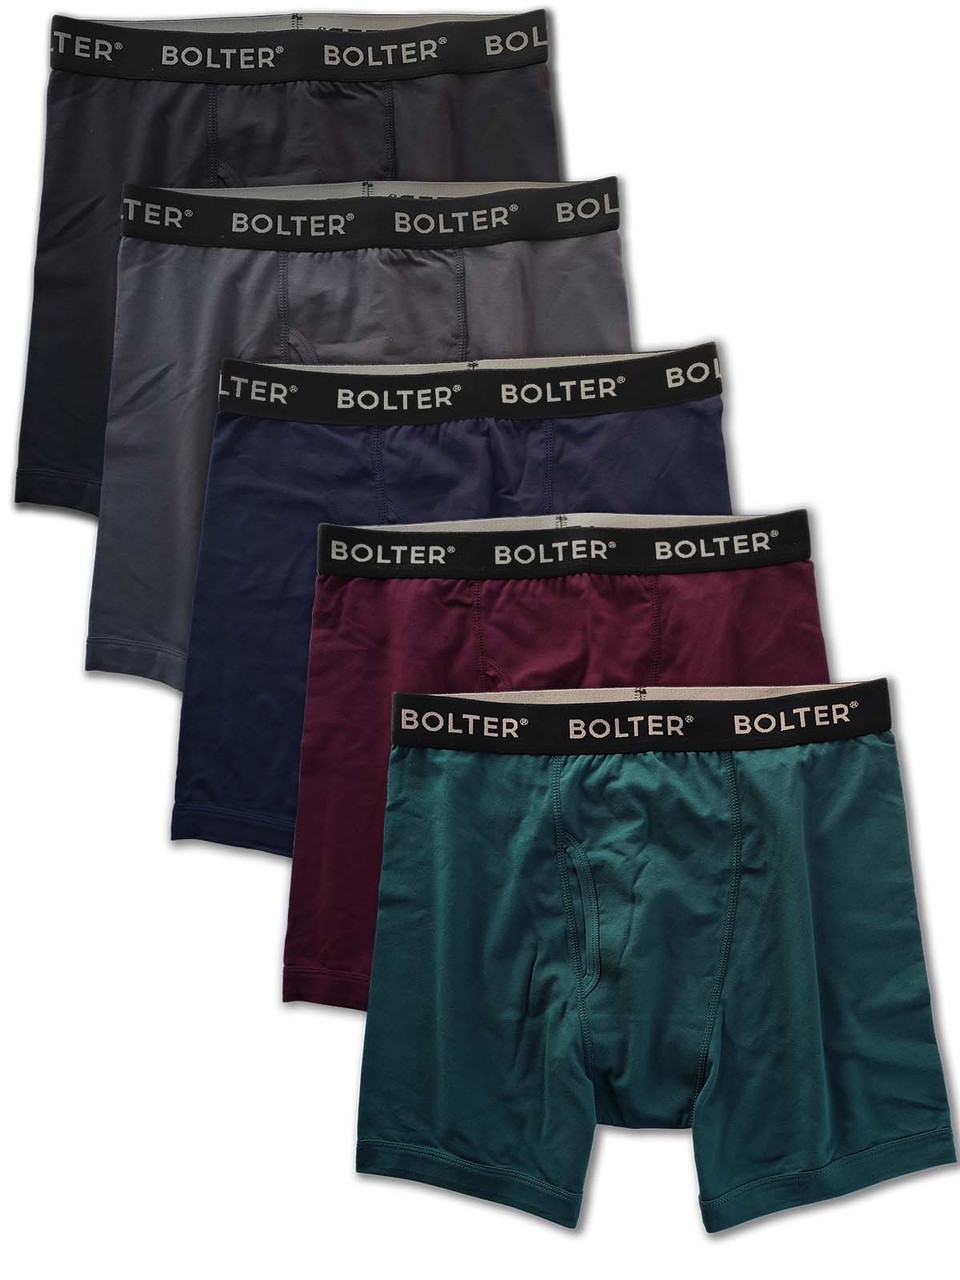 NWT Women's 95% Cotton 5% Spandex Briefs Underwear Sizes 2 x , 3 x , 4 x